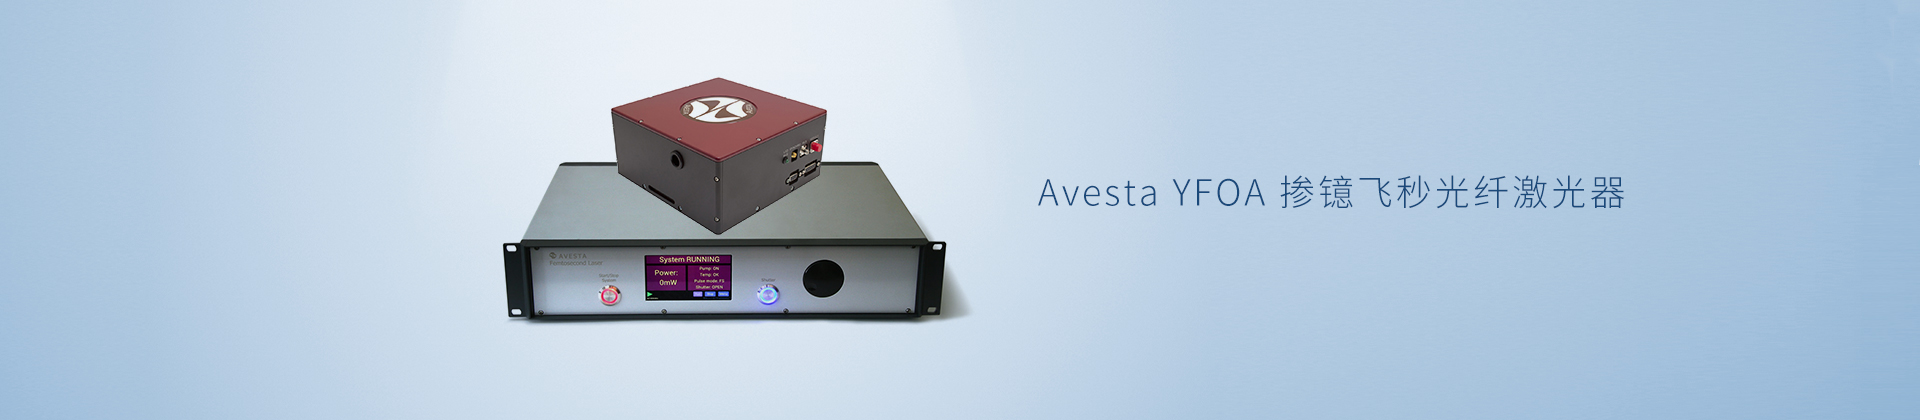 Avesta YFOA 掺镱飞秒光纤激光器